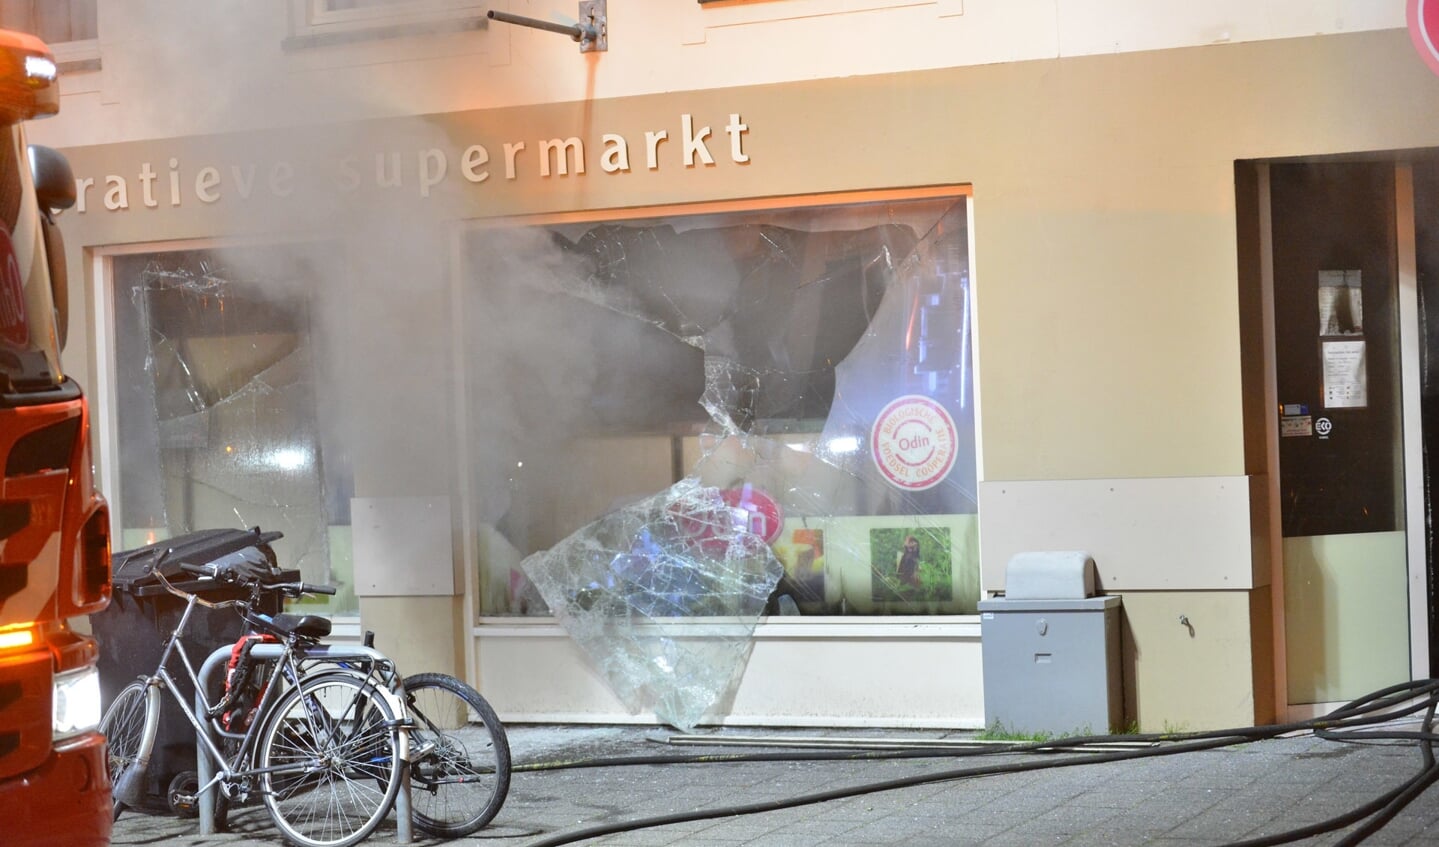 De brandweer blust bij supermarkt Odin.